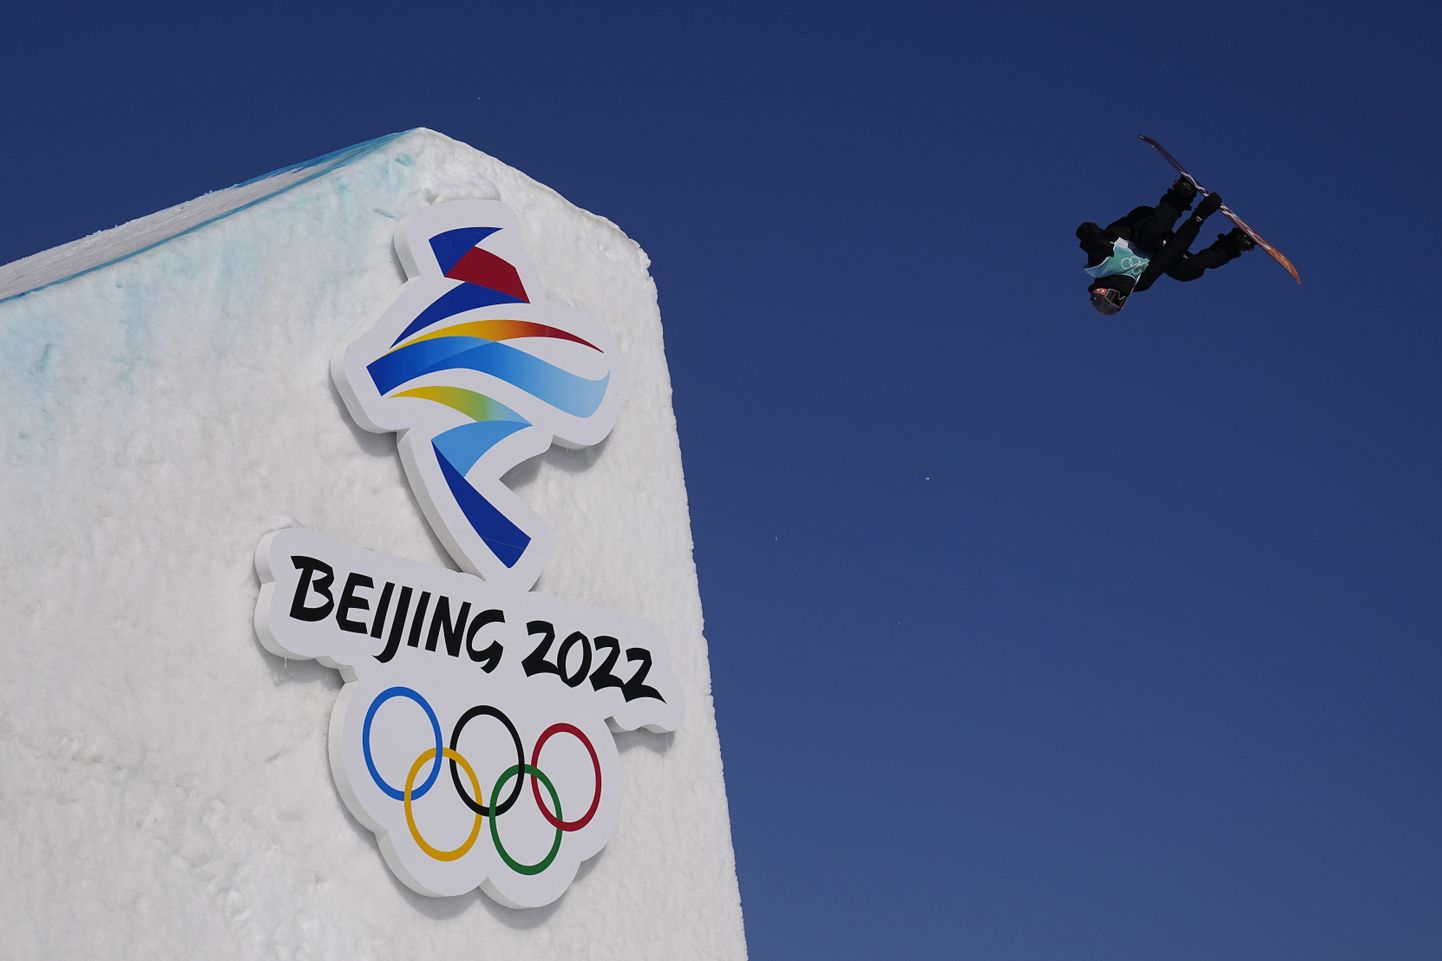 Venemaa olümpiakomitee sportlased ei saa mineviku pattude tõttu Pekingis oma riigilipu all võistelda. Kahjuks on endiselt neil dopinguga suuri probleeme.